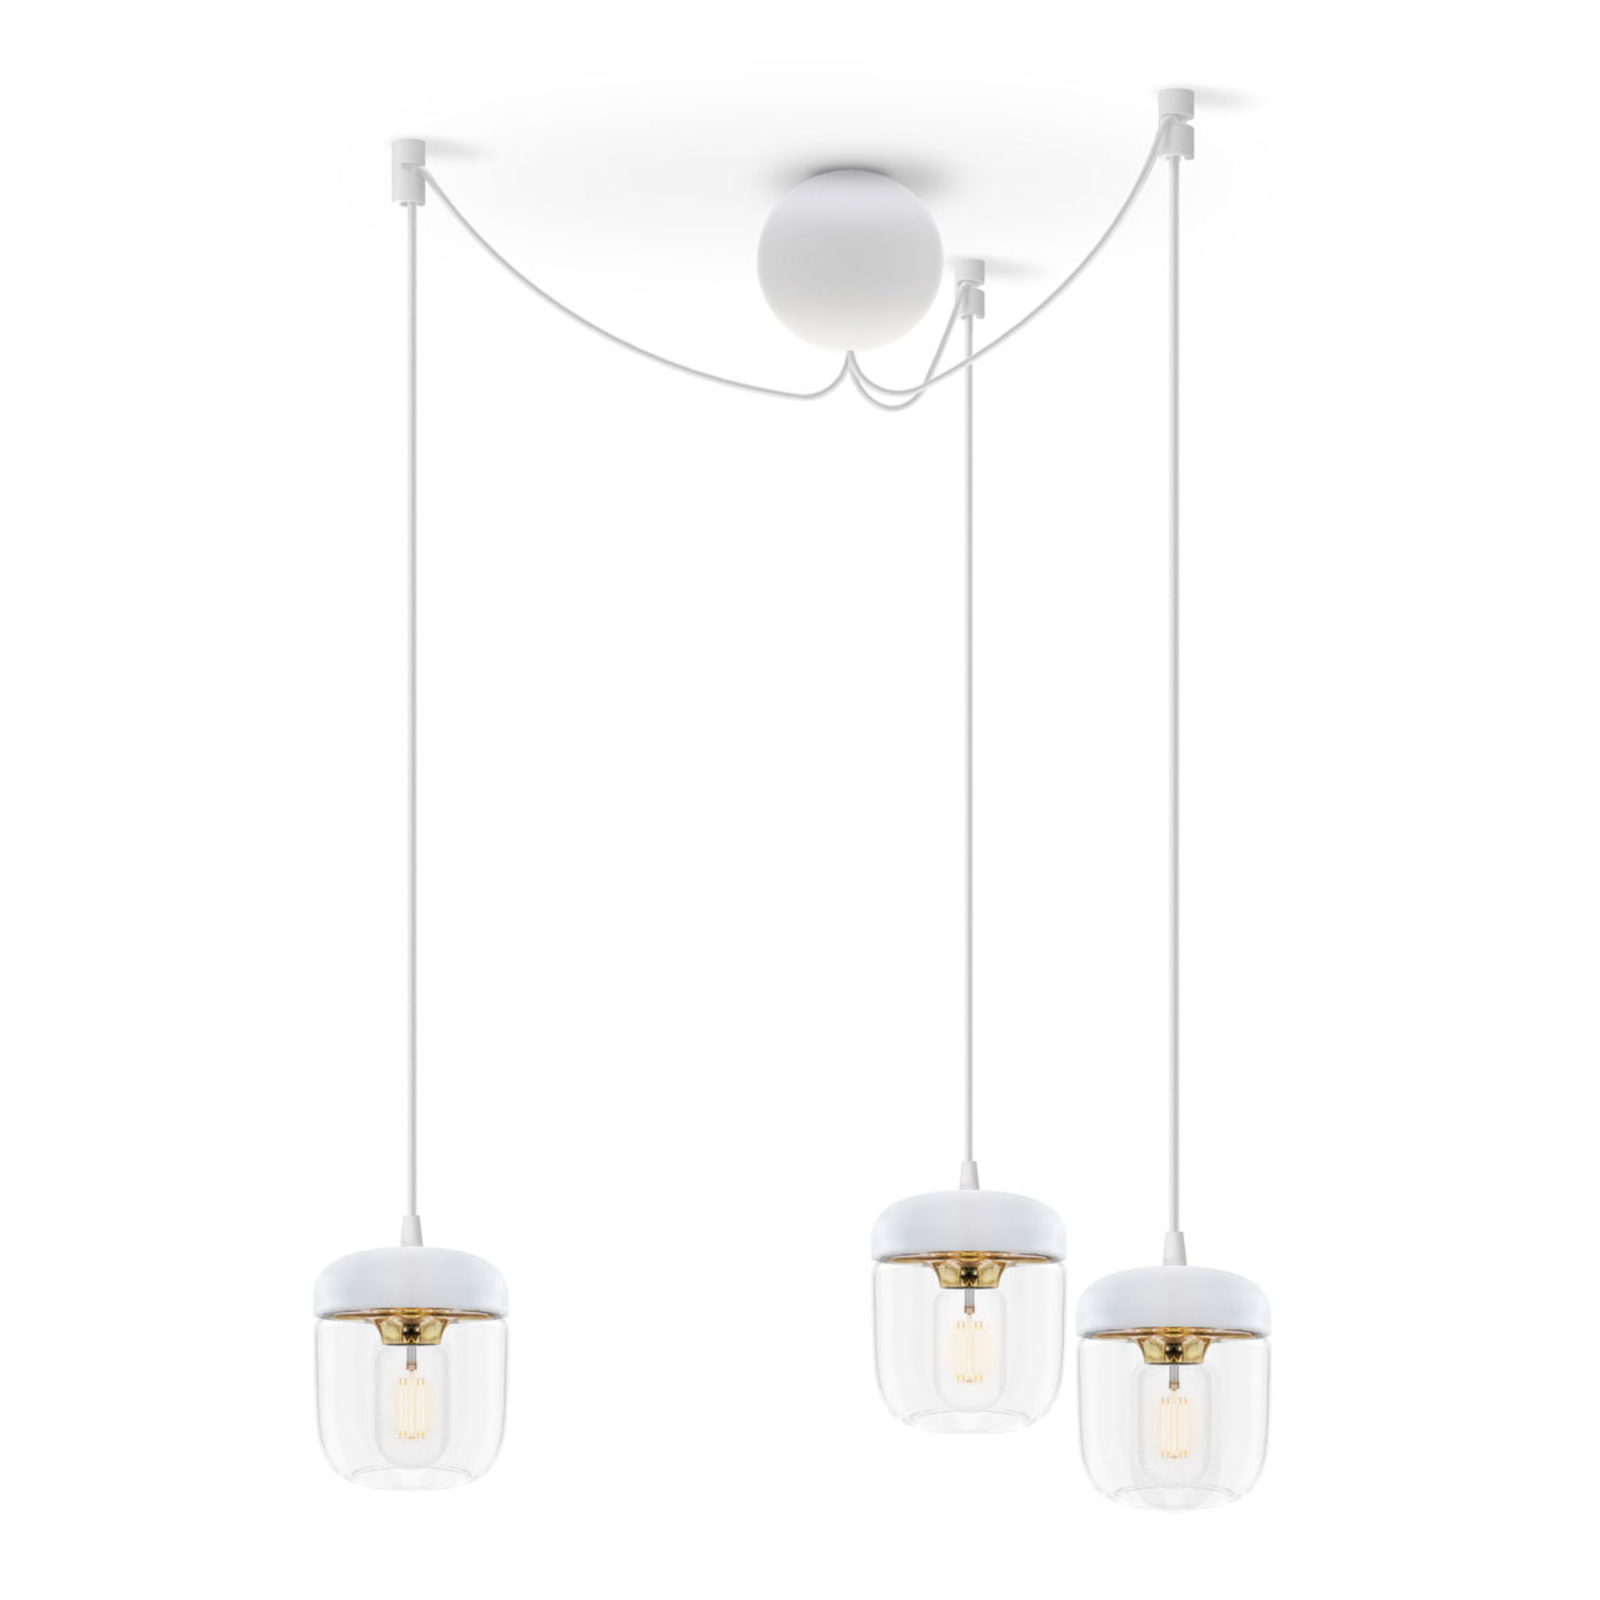 UMAGE Acorn hanging lamp three-bulb, white/brass